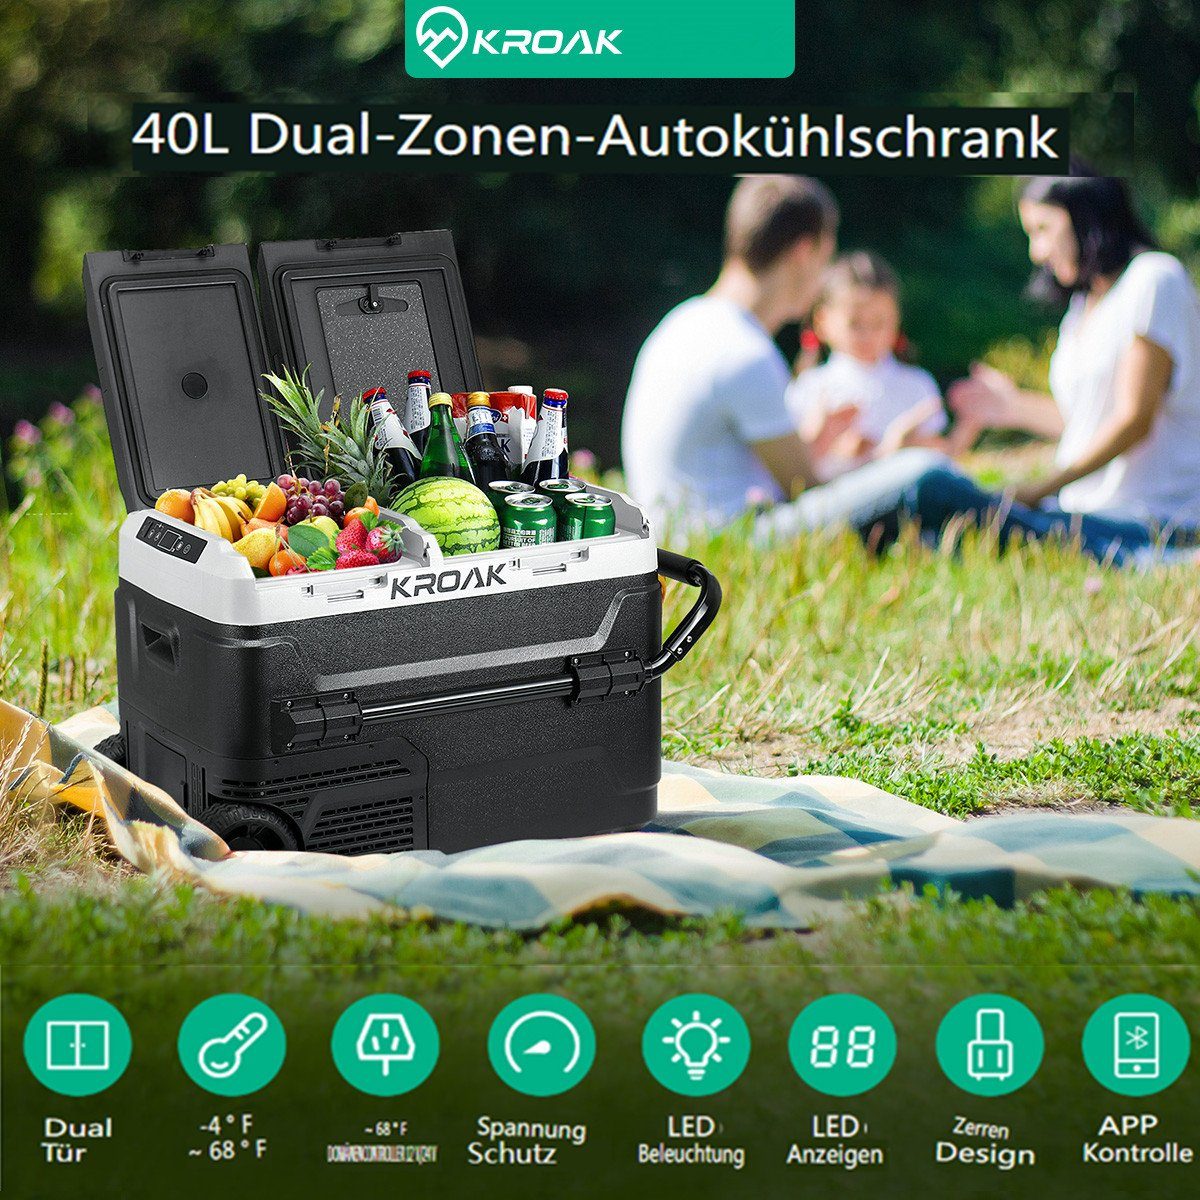 KROAK Outdoor-Flaschenkühler, 40L elektrische Kompressor-Kühlbox  Dual-zonenfunktion, APP-Steuerung